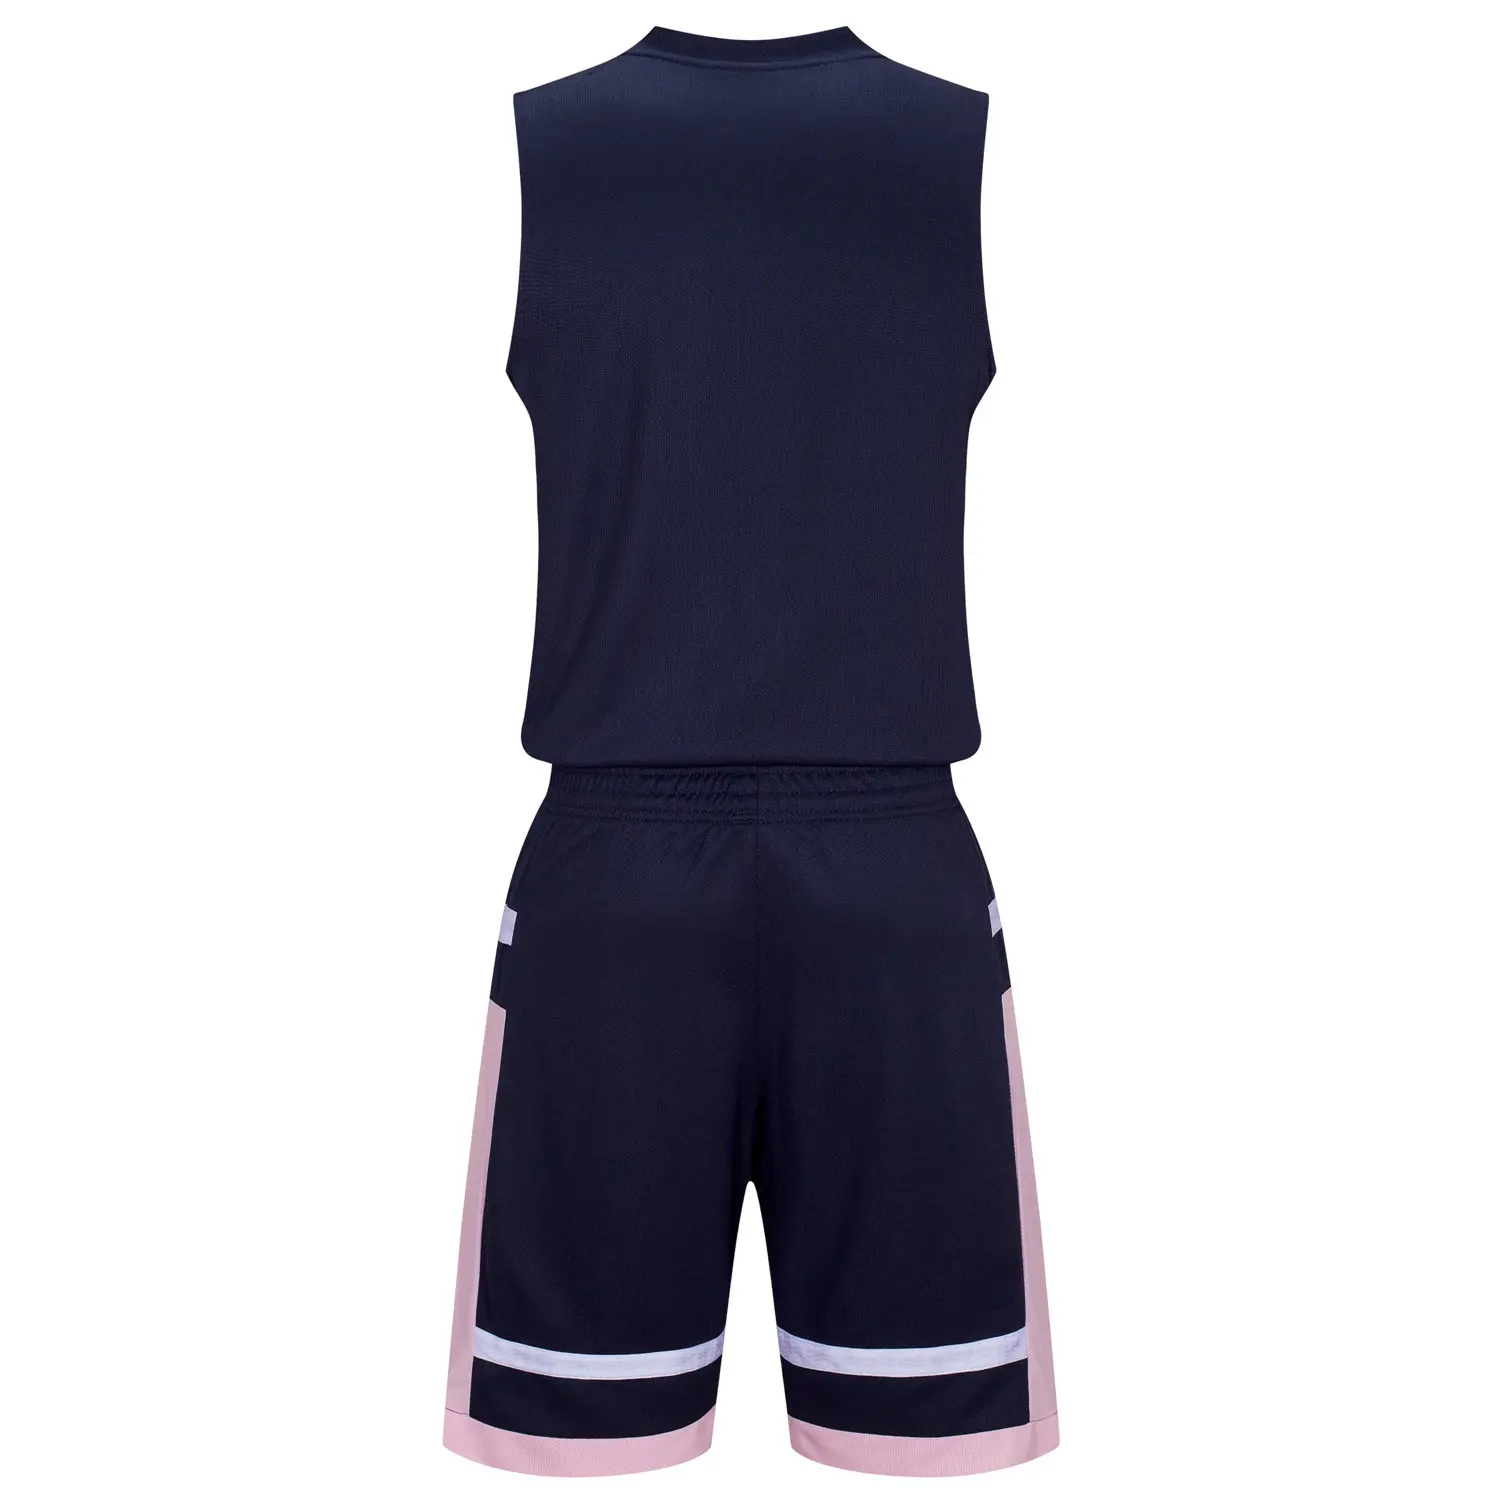 Баскетбольные майки для взрослых, спортивные комплекты, дышащие ткани, тренировочный простой дизайн, полиэстер эластичный против морщин, одежда для пар